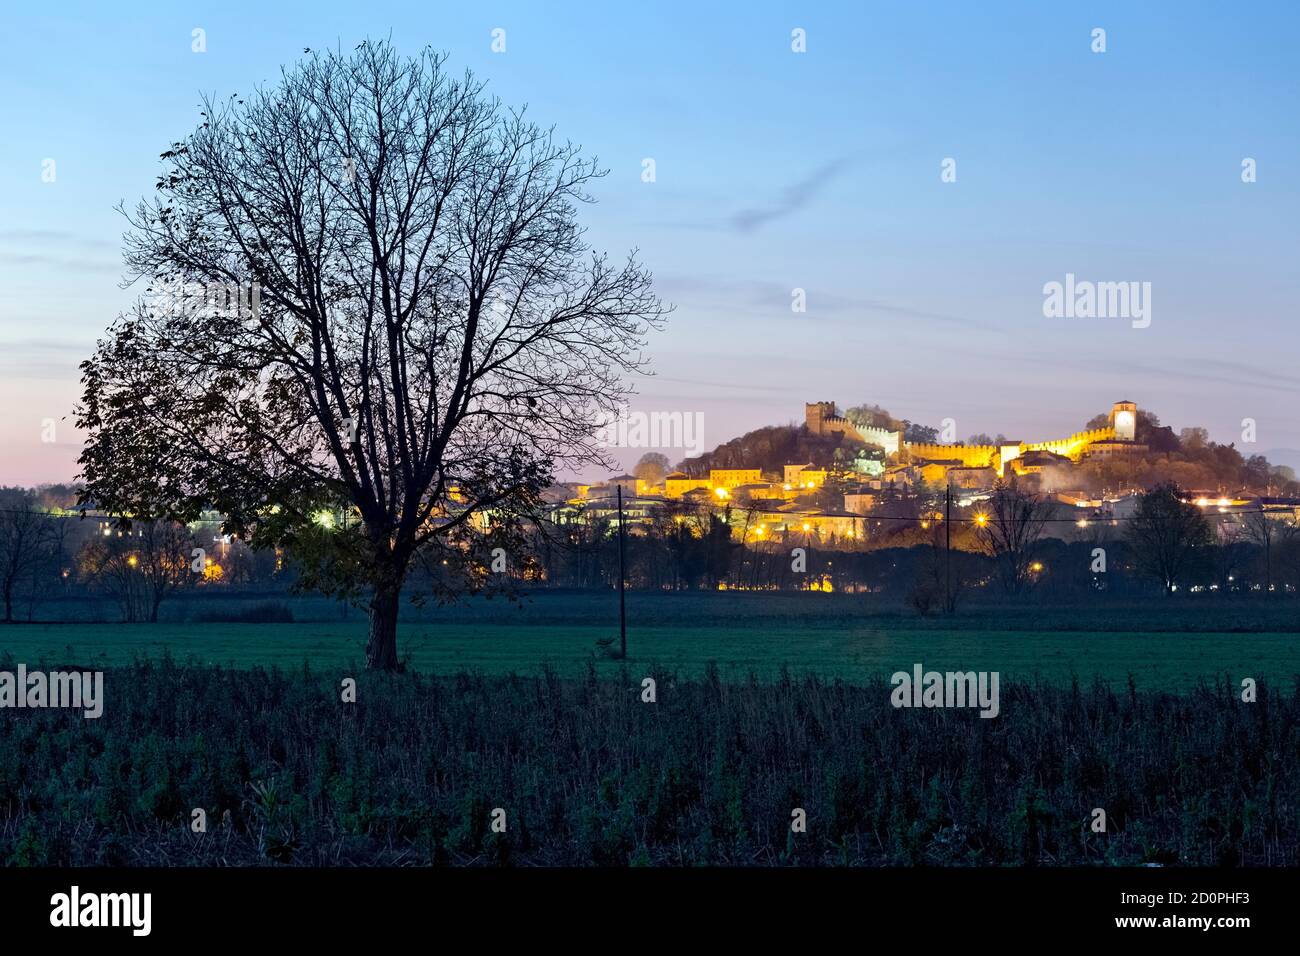 Le village médiéval de Monzambano s'élève au-dessus de la plaine Lombard. Monzambano, province de Mantova, Lombardie, Italie, Europe. Banque D'Images